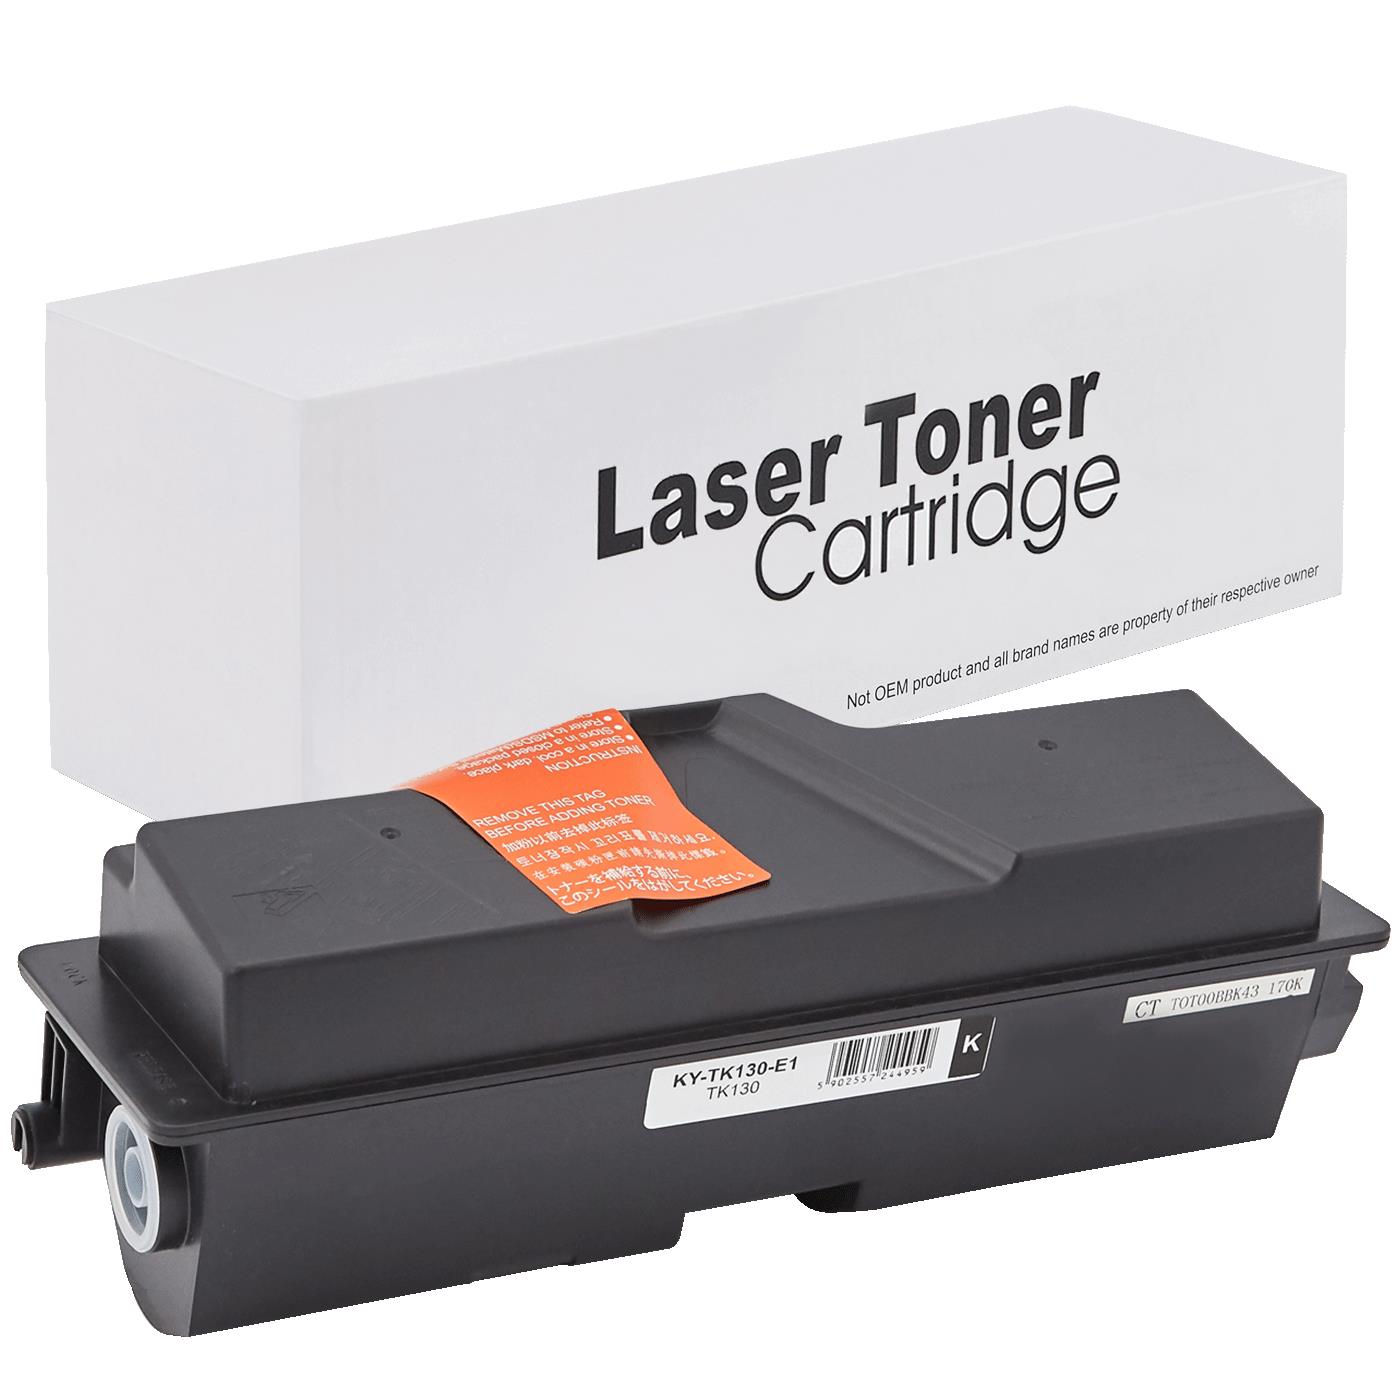 съвместима тонер касета за принтери и печатащи устройства на Kyocera Mita 1300DTN Toner KY-TK130 | TK130. Ниски цени, прецизно изпълнение, високо качество.